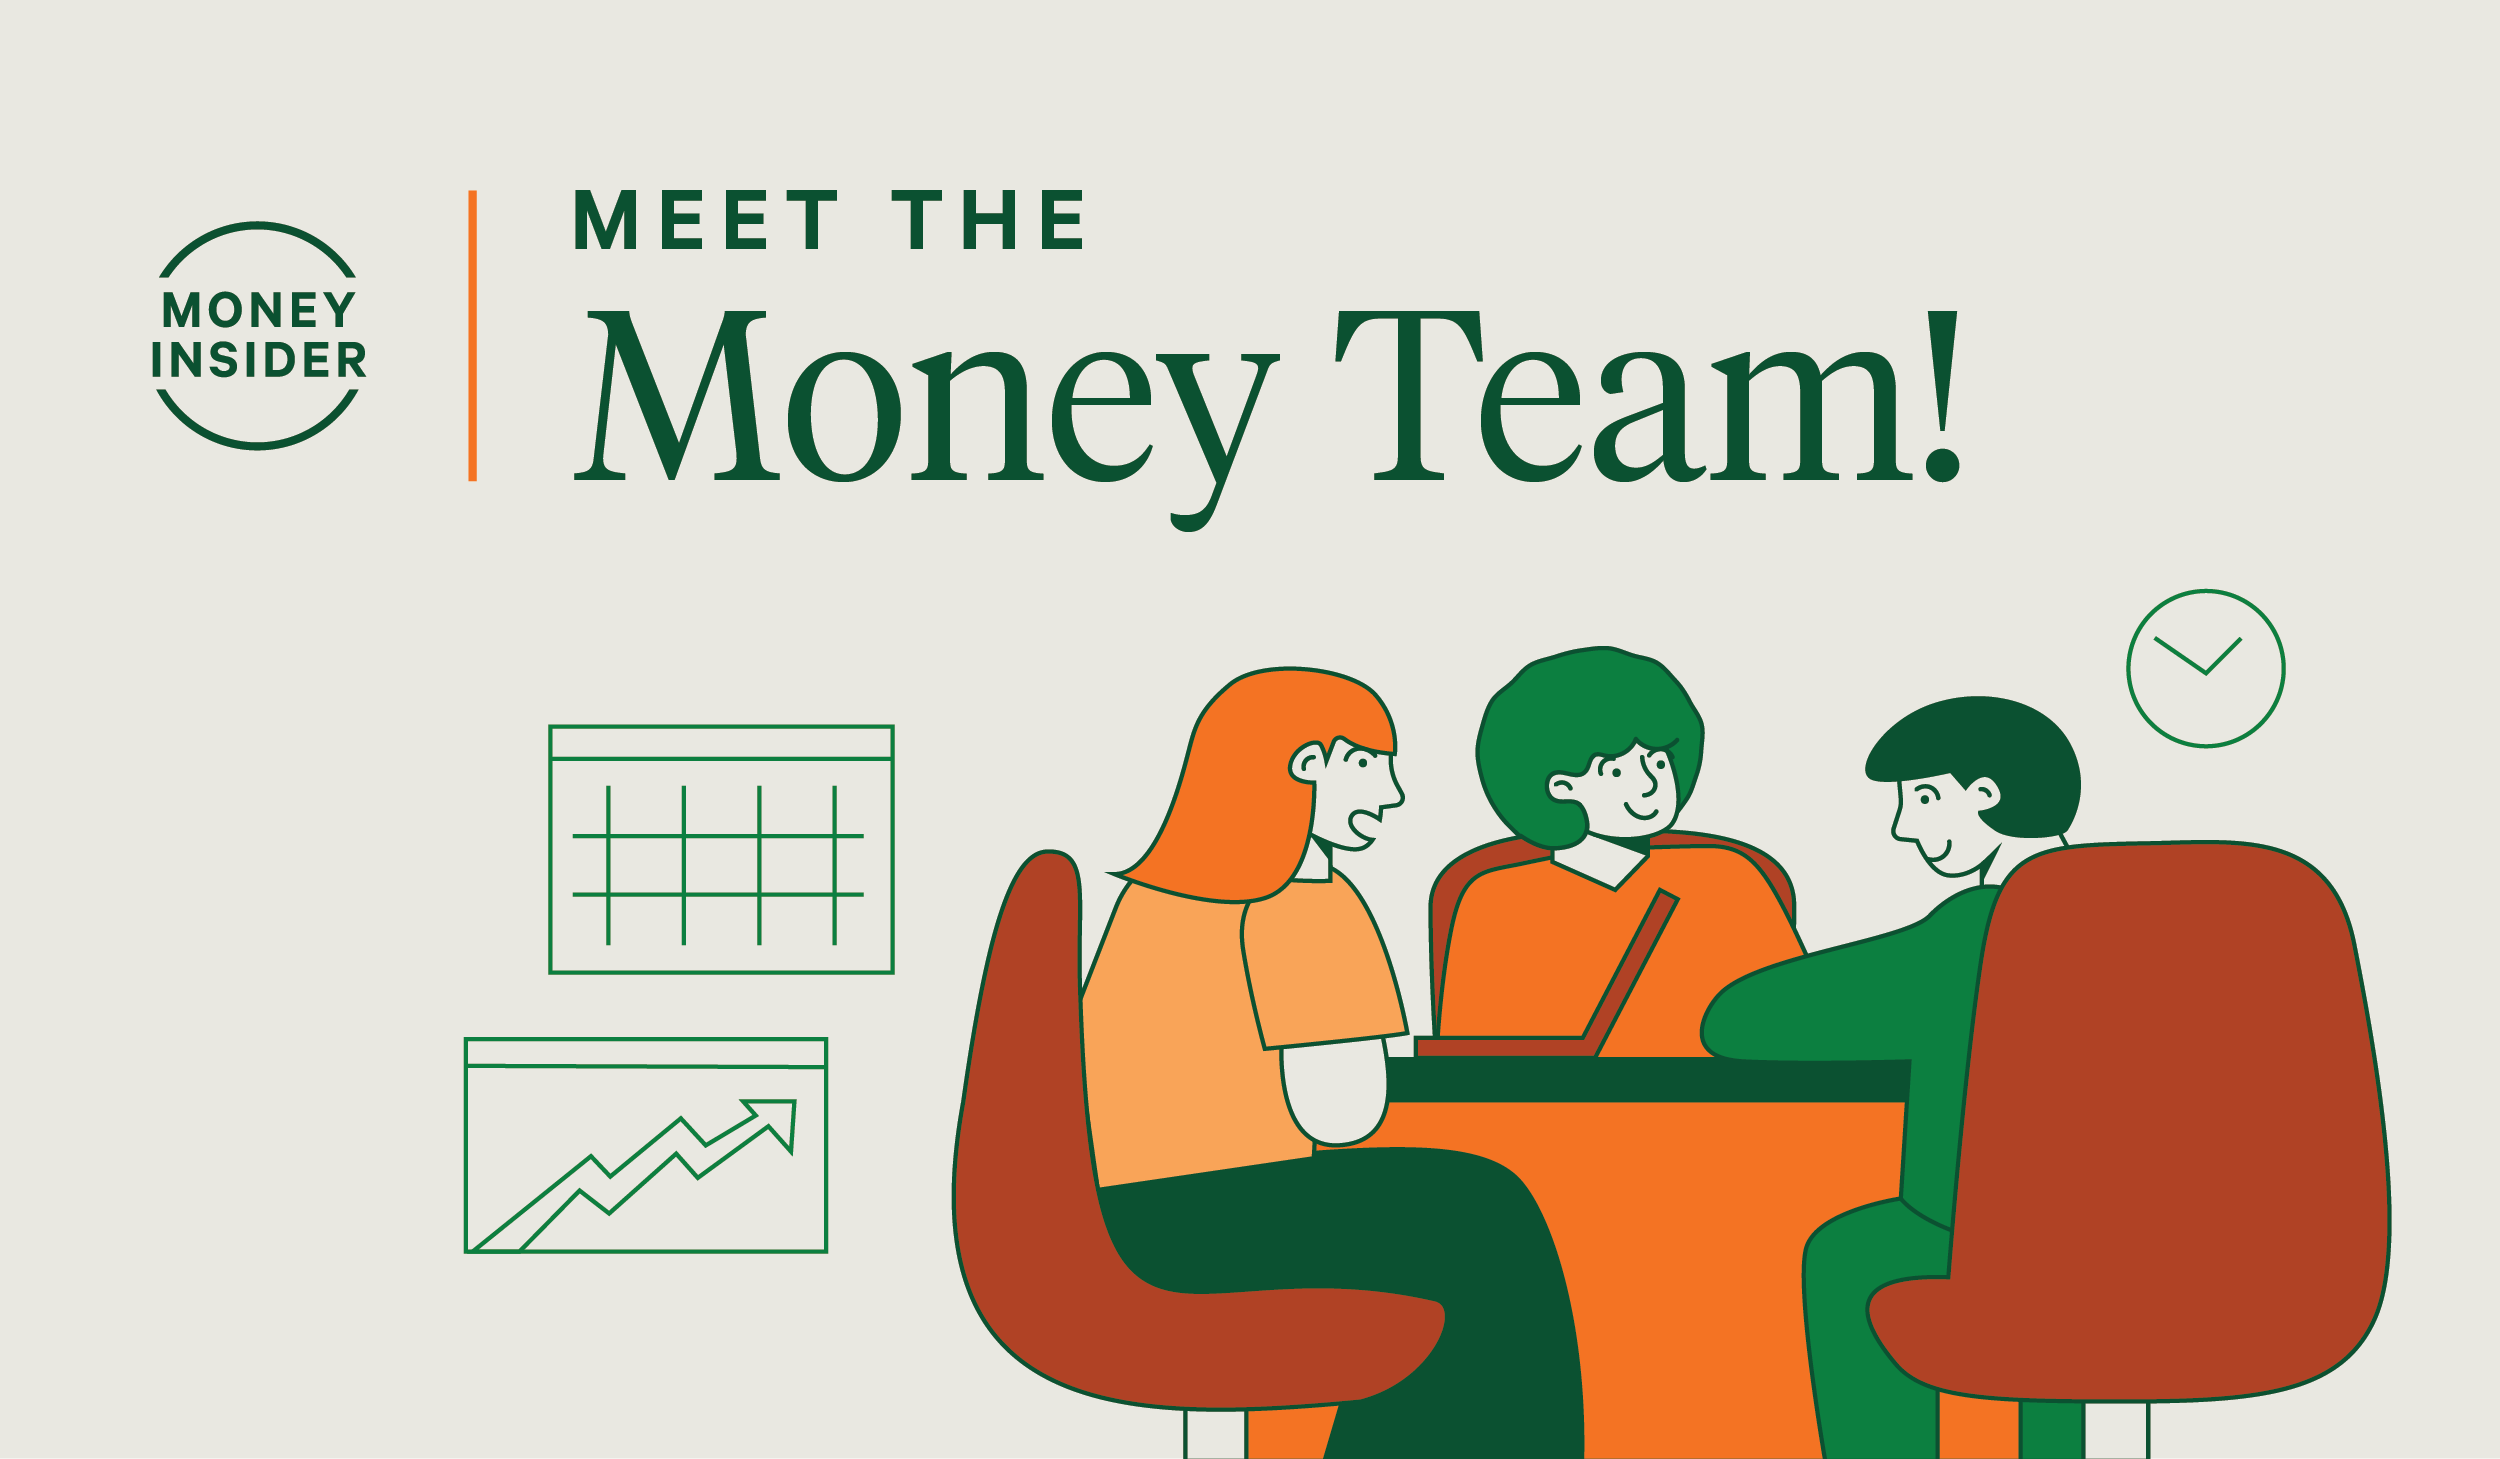 Meet the Money Team